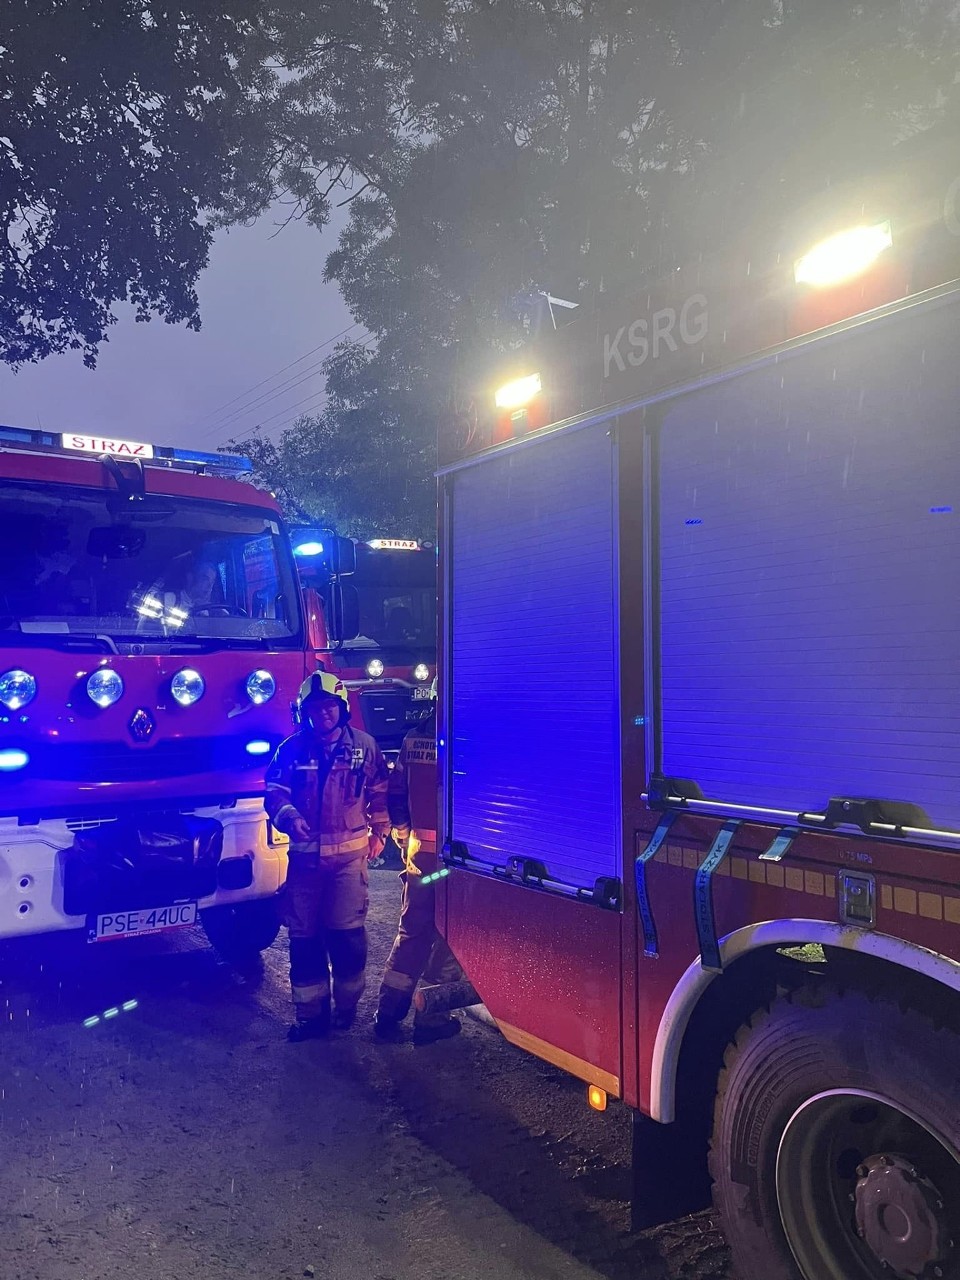 Pożar stajni w miejscowości Żabinko. Z ogniem walczyli strażacy z powiatu poznańskiego i śremskiego [zdjęcia]